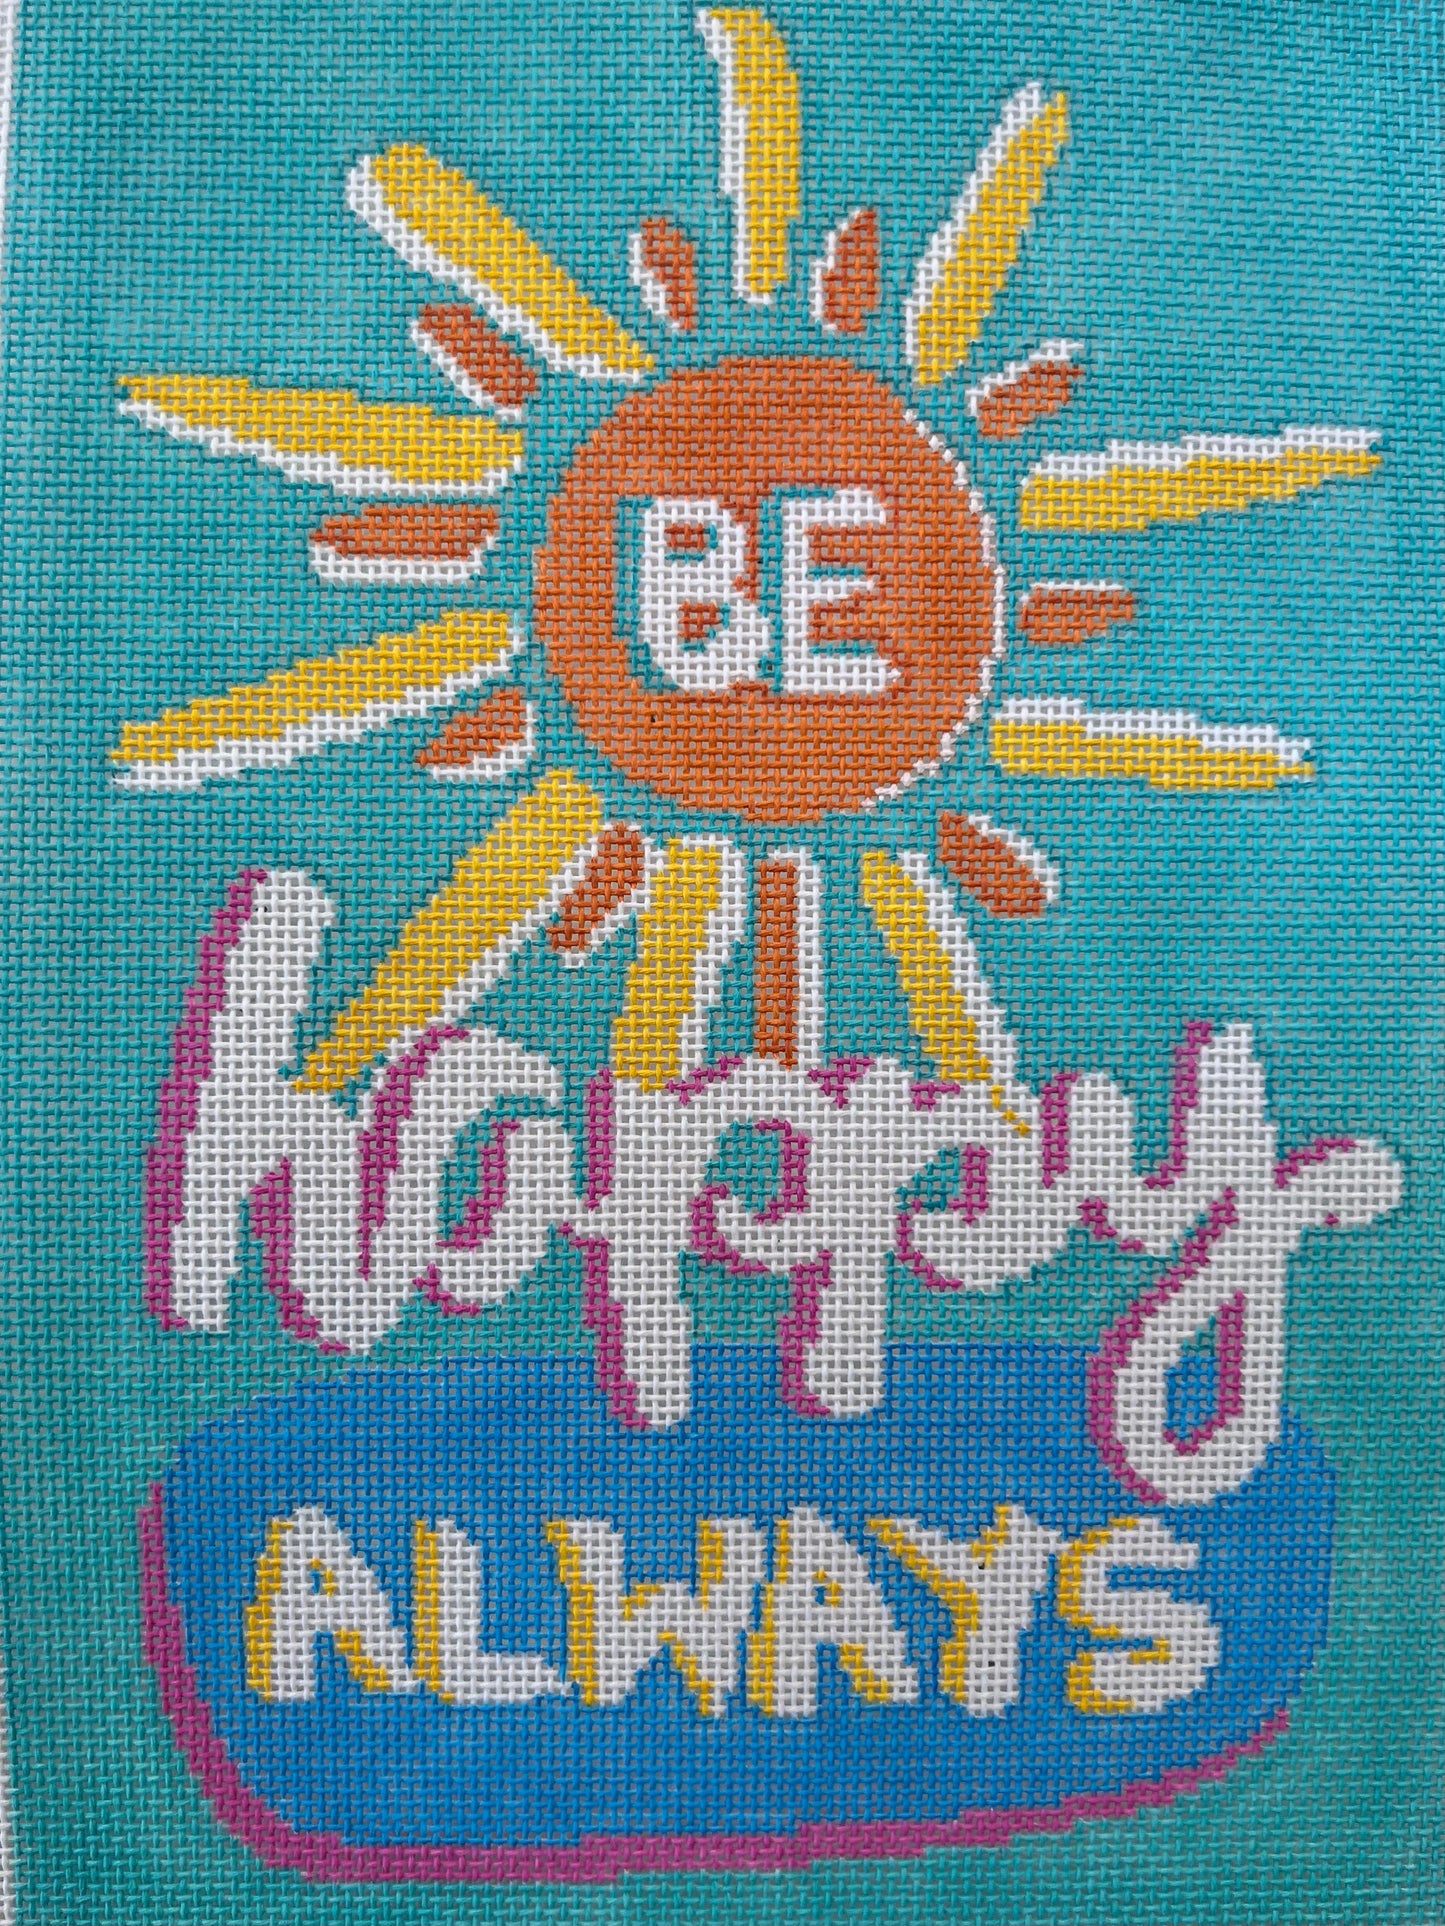 Be Happy Always